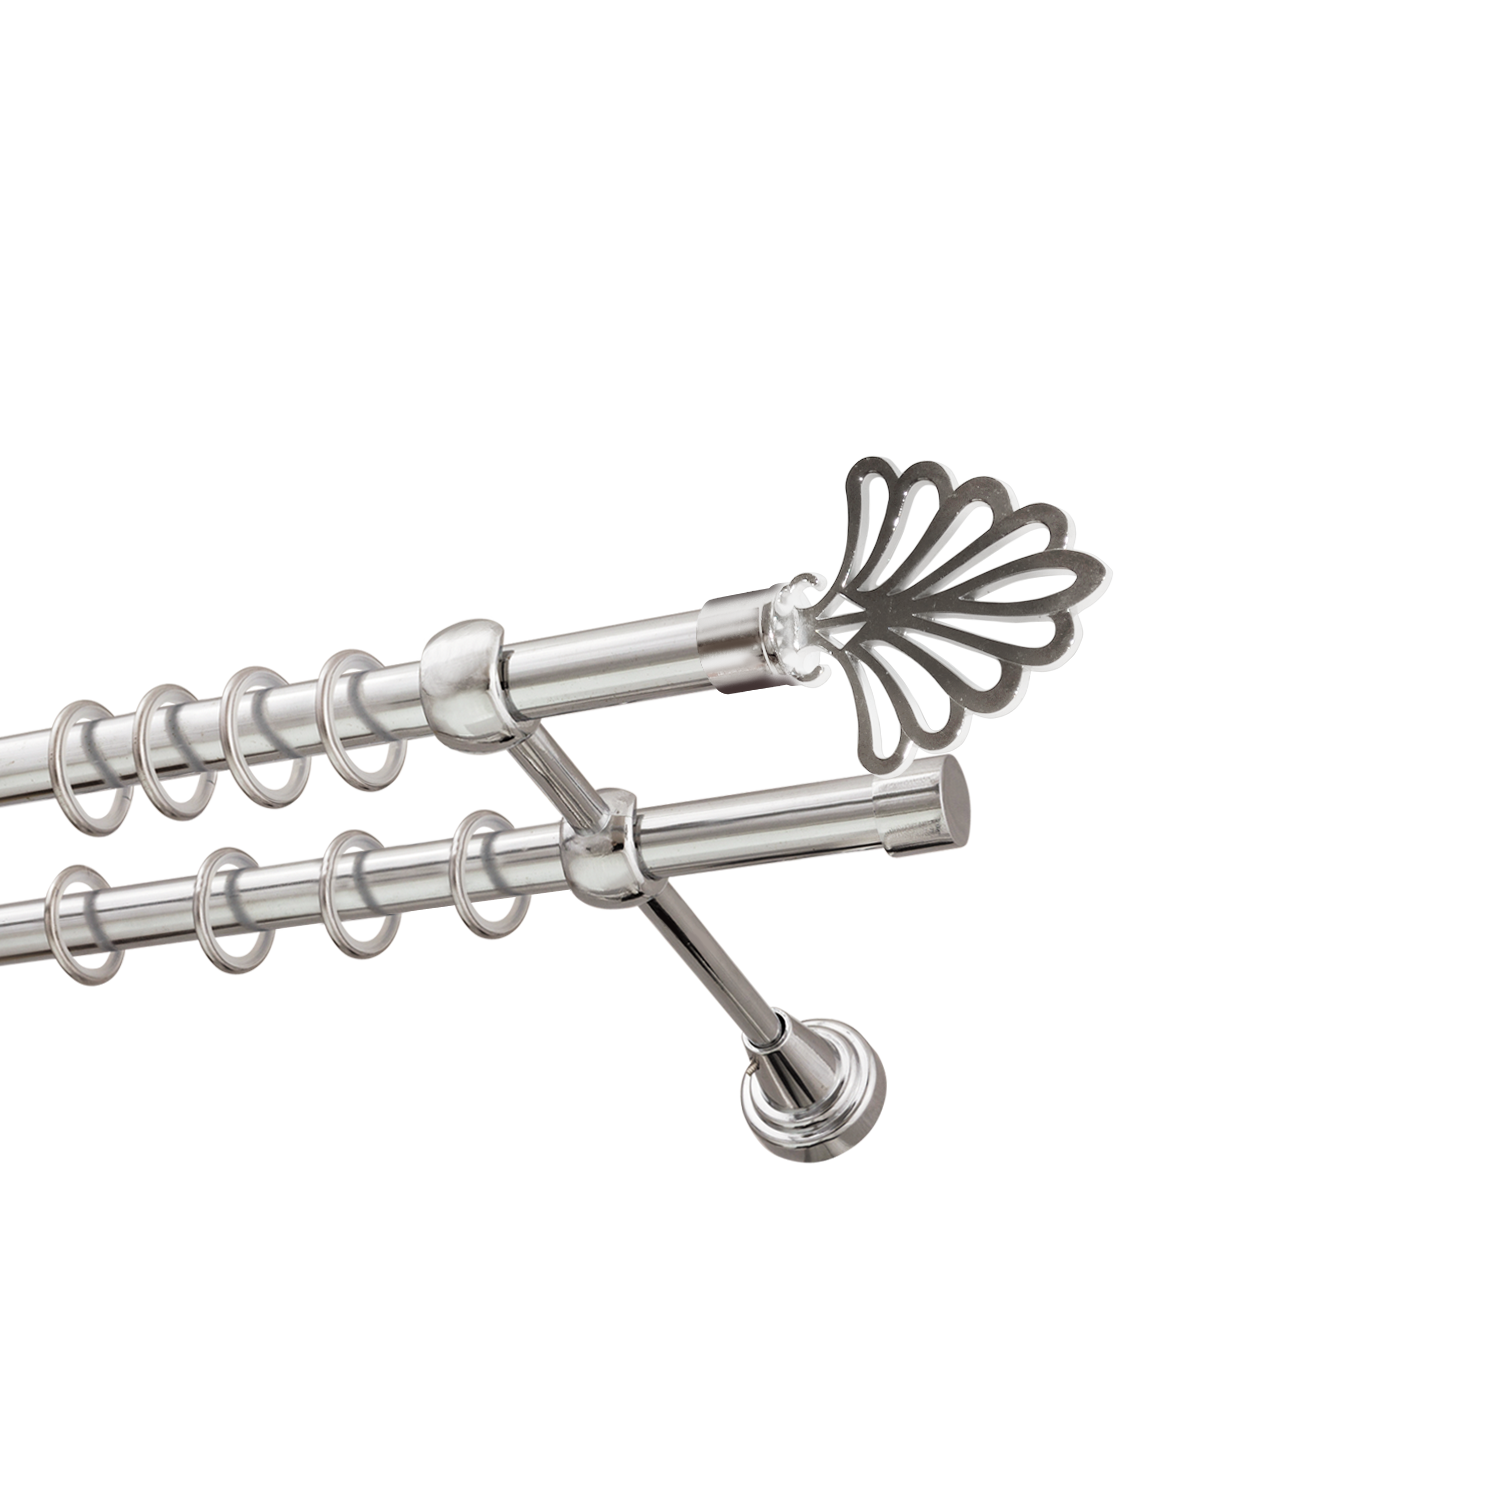 Металлический карниз для штор Бутик, двухрядный 16/16 мм, серебро, гладкая штанга, длина 300 см - фото Wikidecor.ru